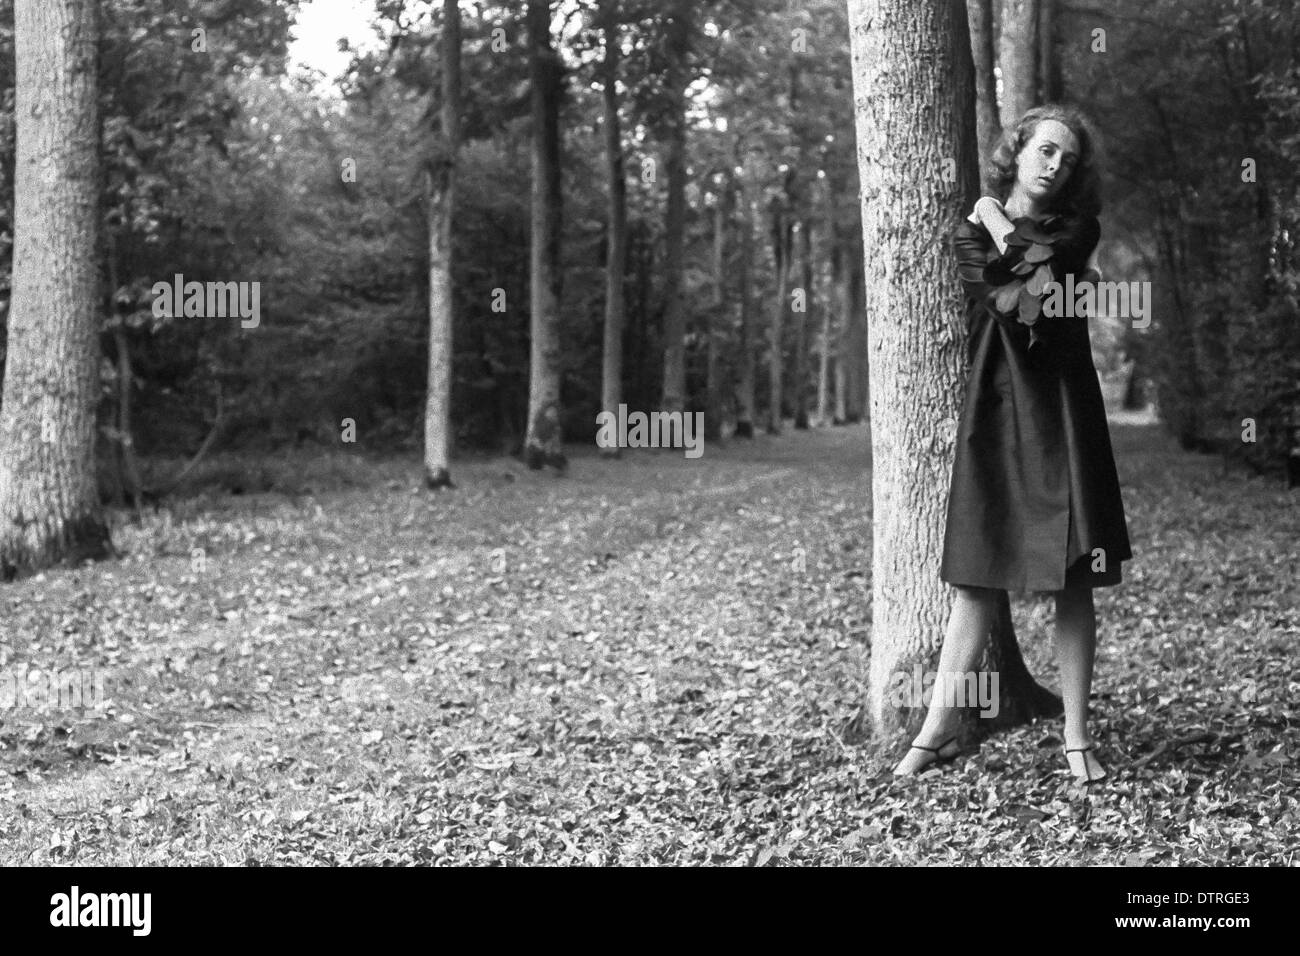 Modèle de mode des années 60 avec manteau noir posing in forest Banque D'Images